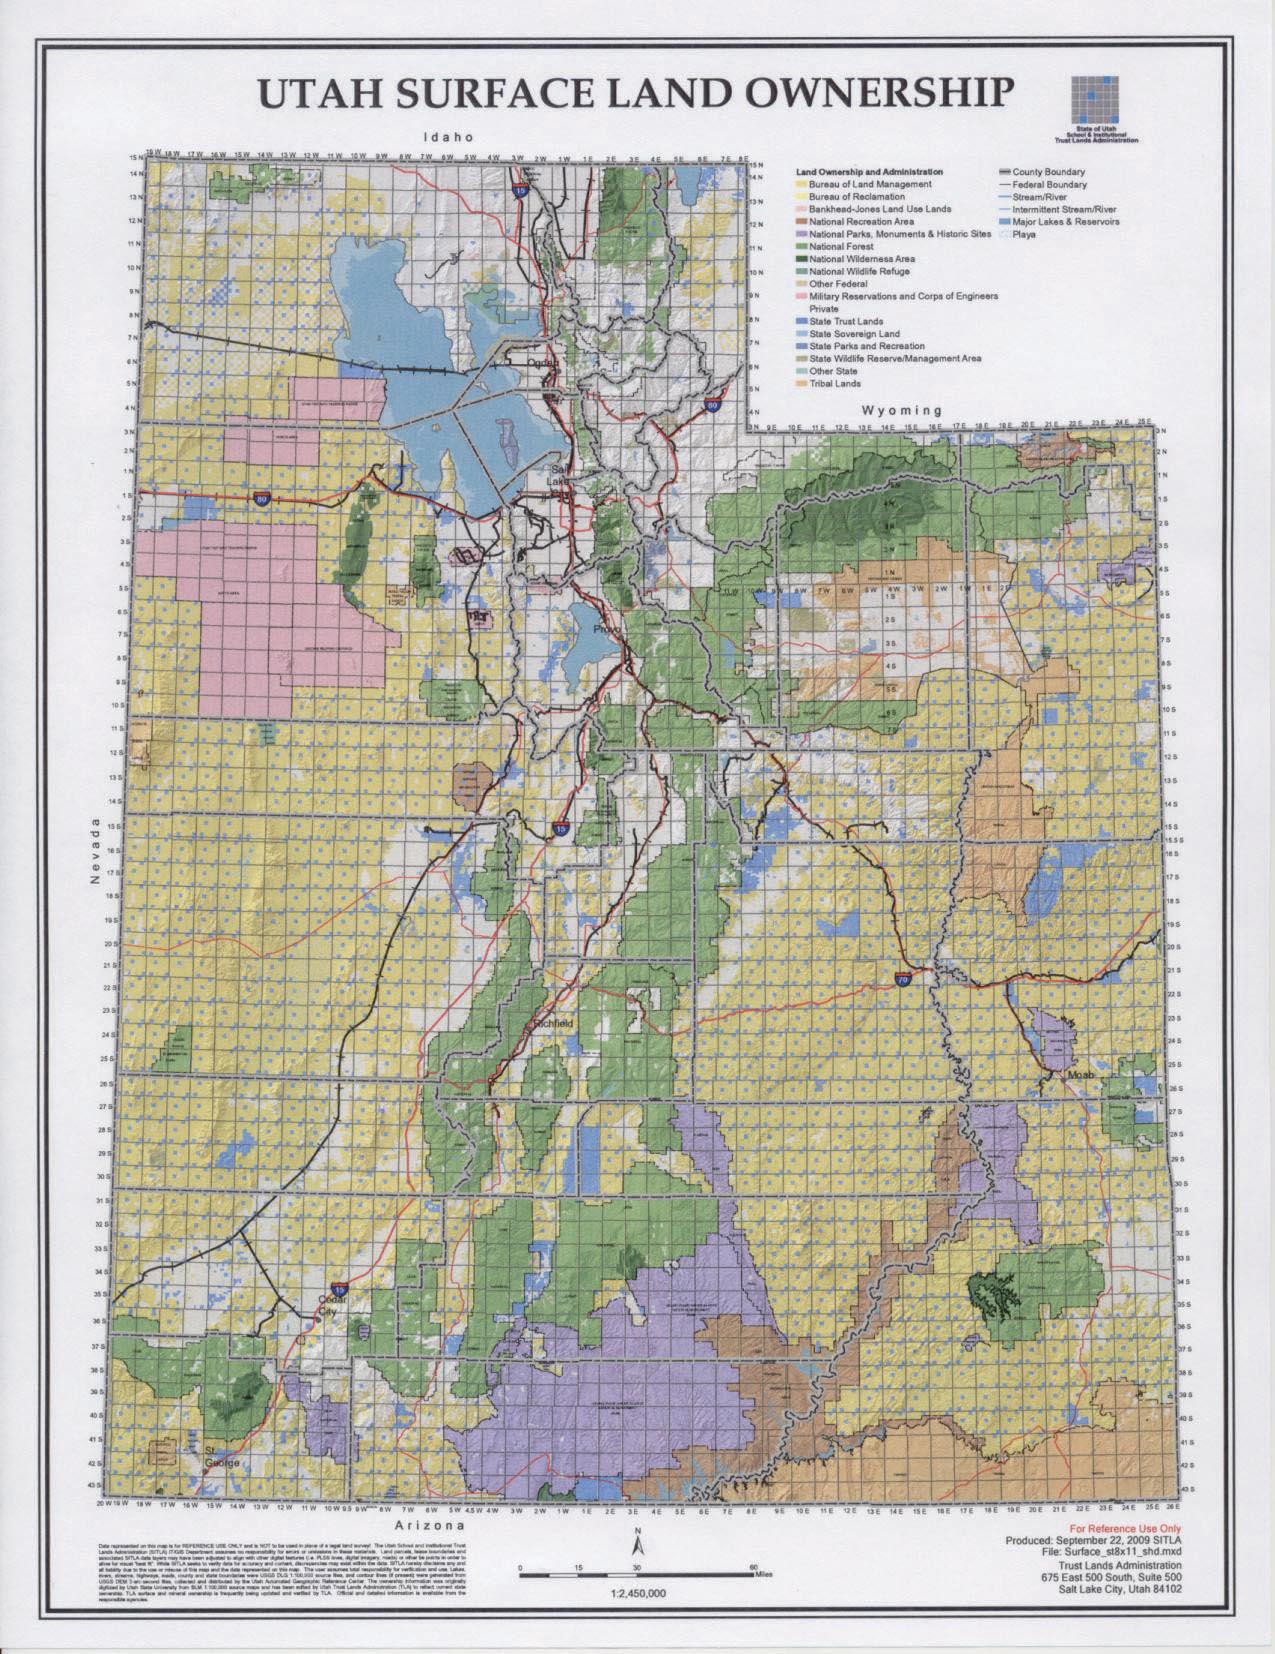 TL Map Copy 